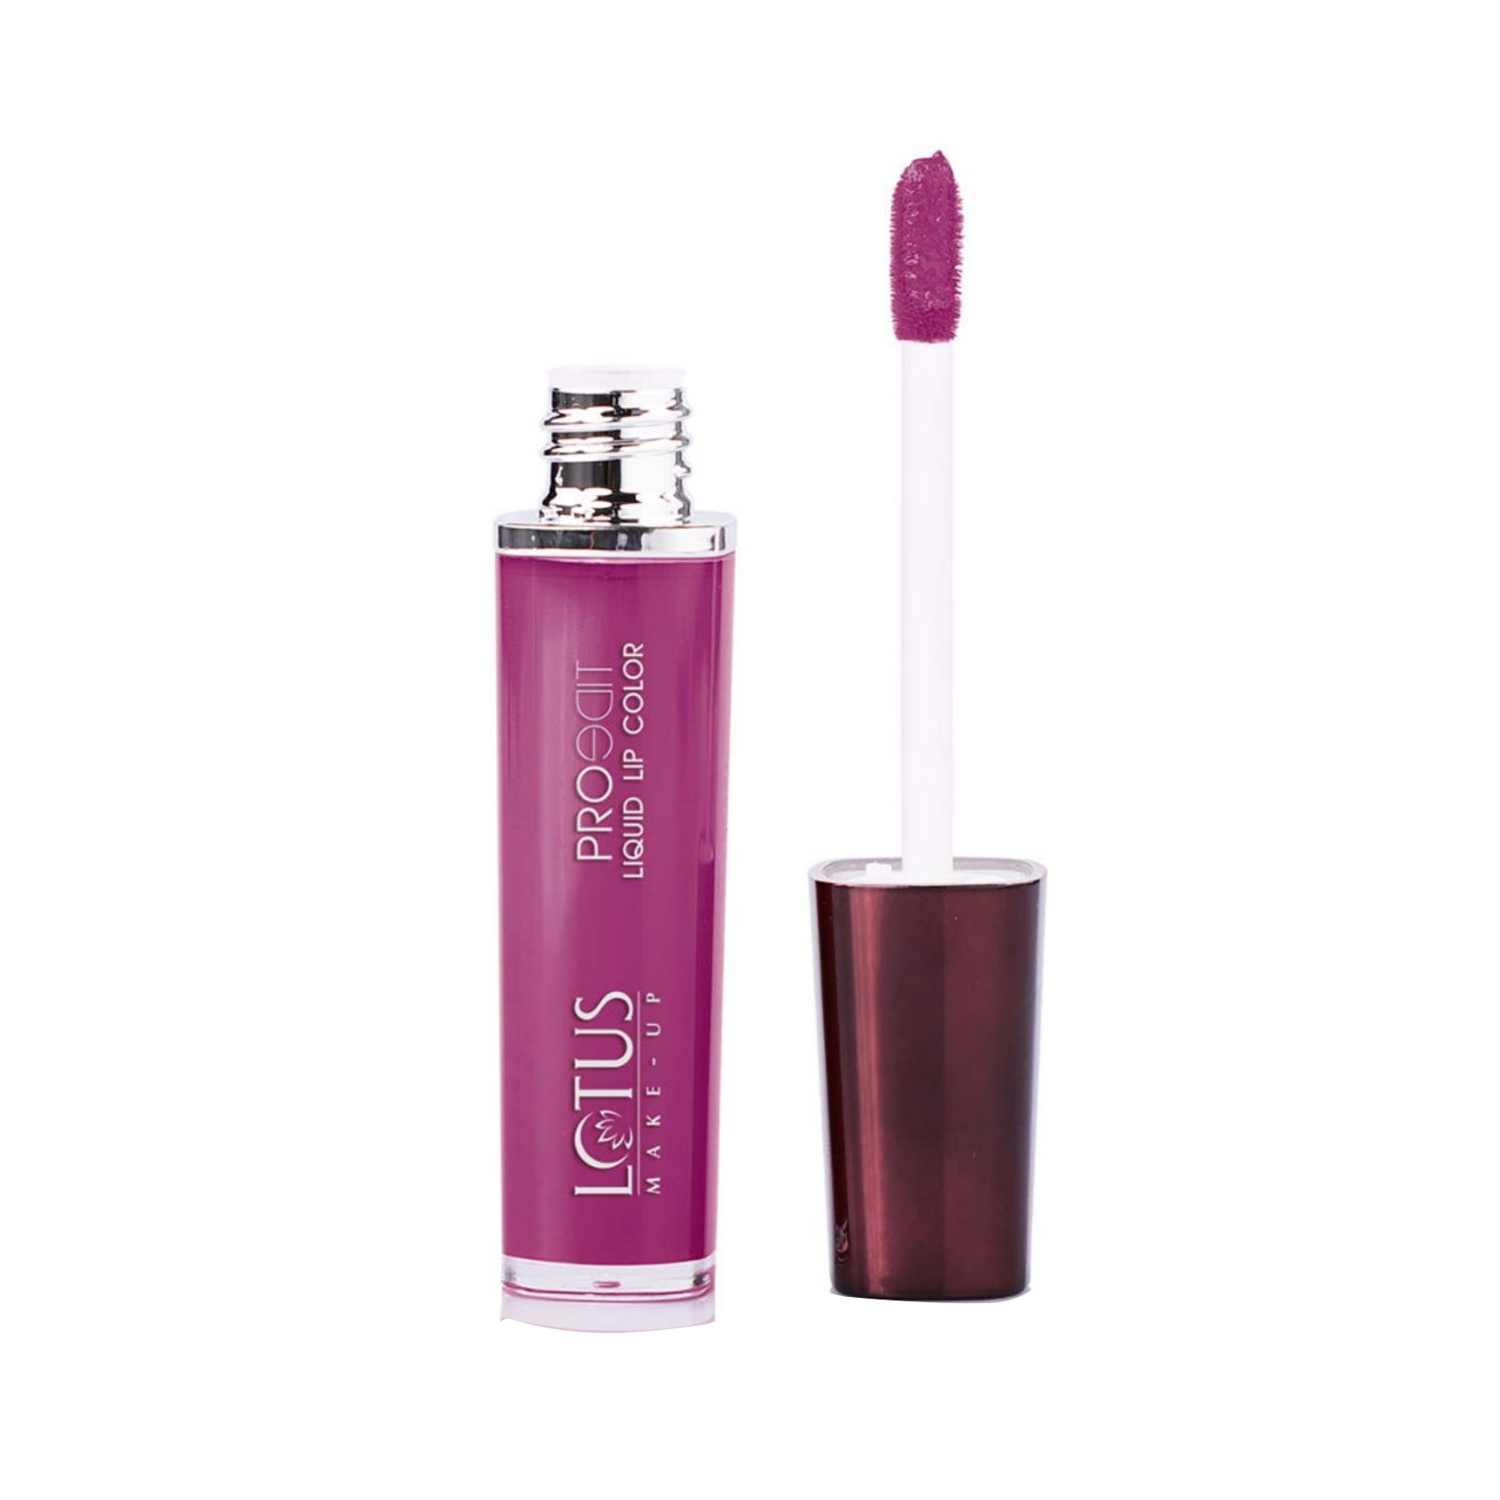 Lotus | Lotus Makeup Proedit Liquid Matte Lip Color - PLC07 Mauve Over (8g)